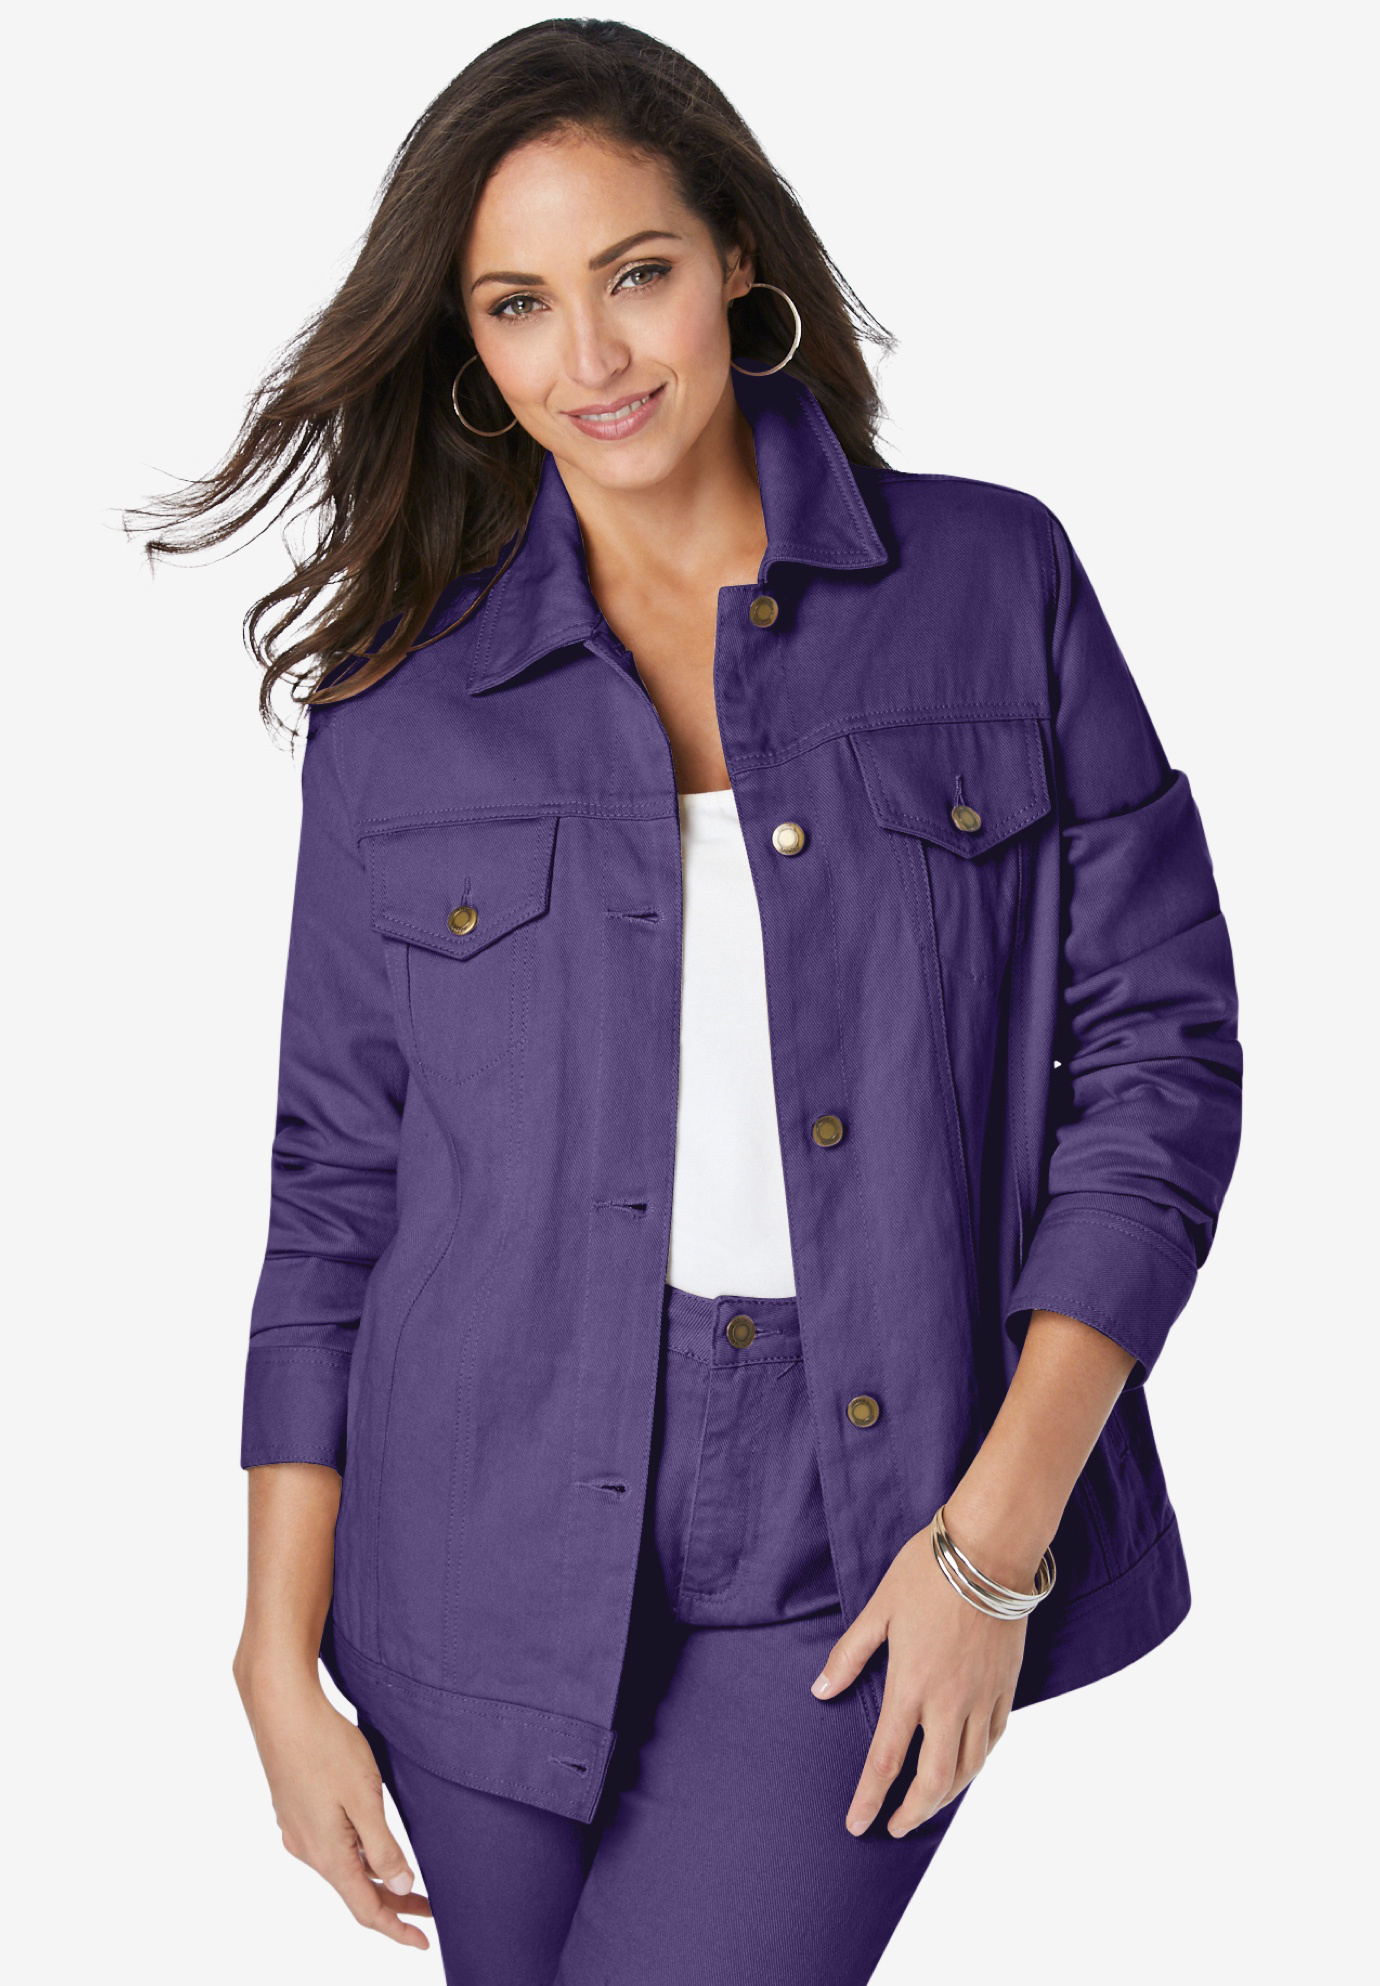 purple jean jacket